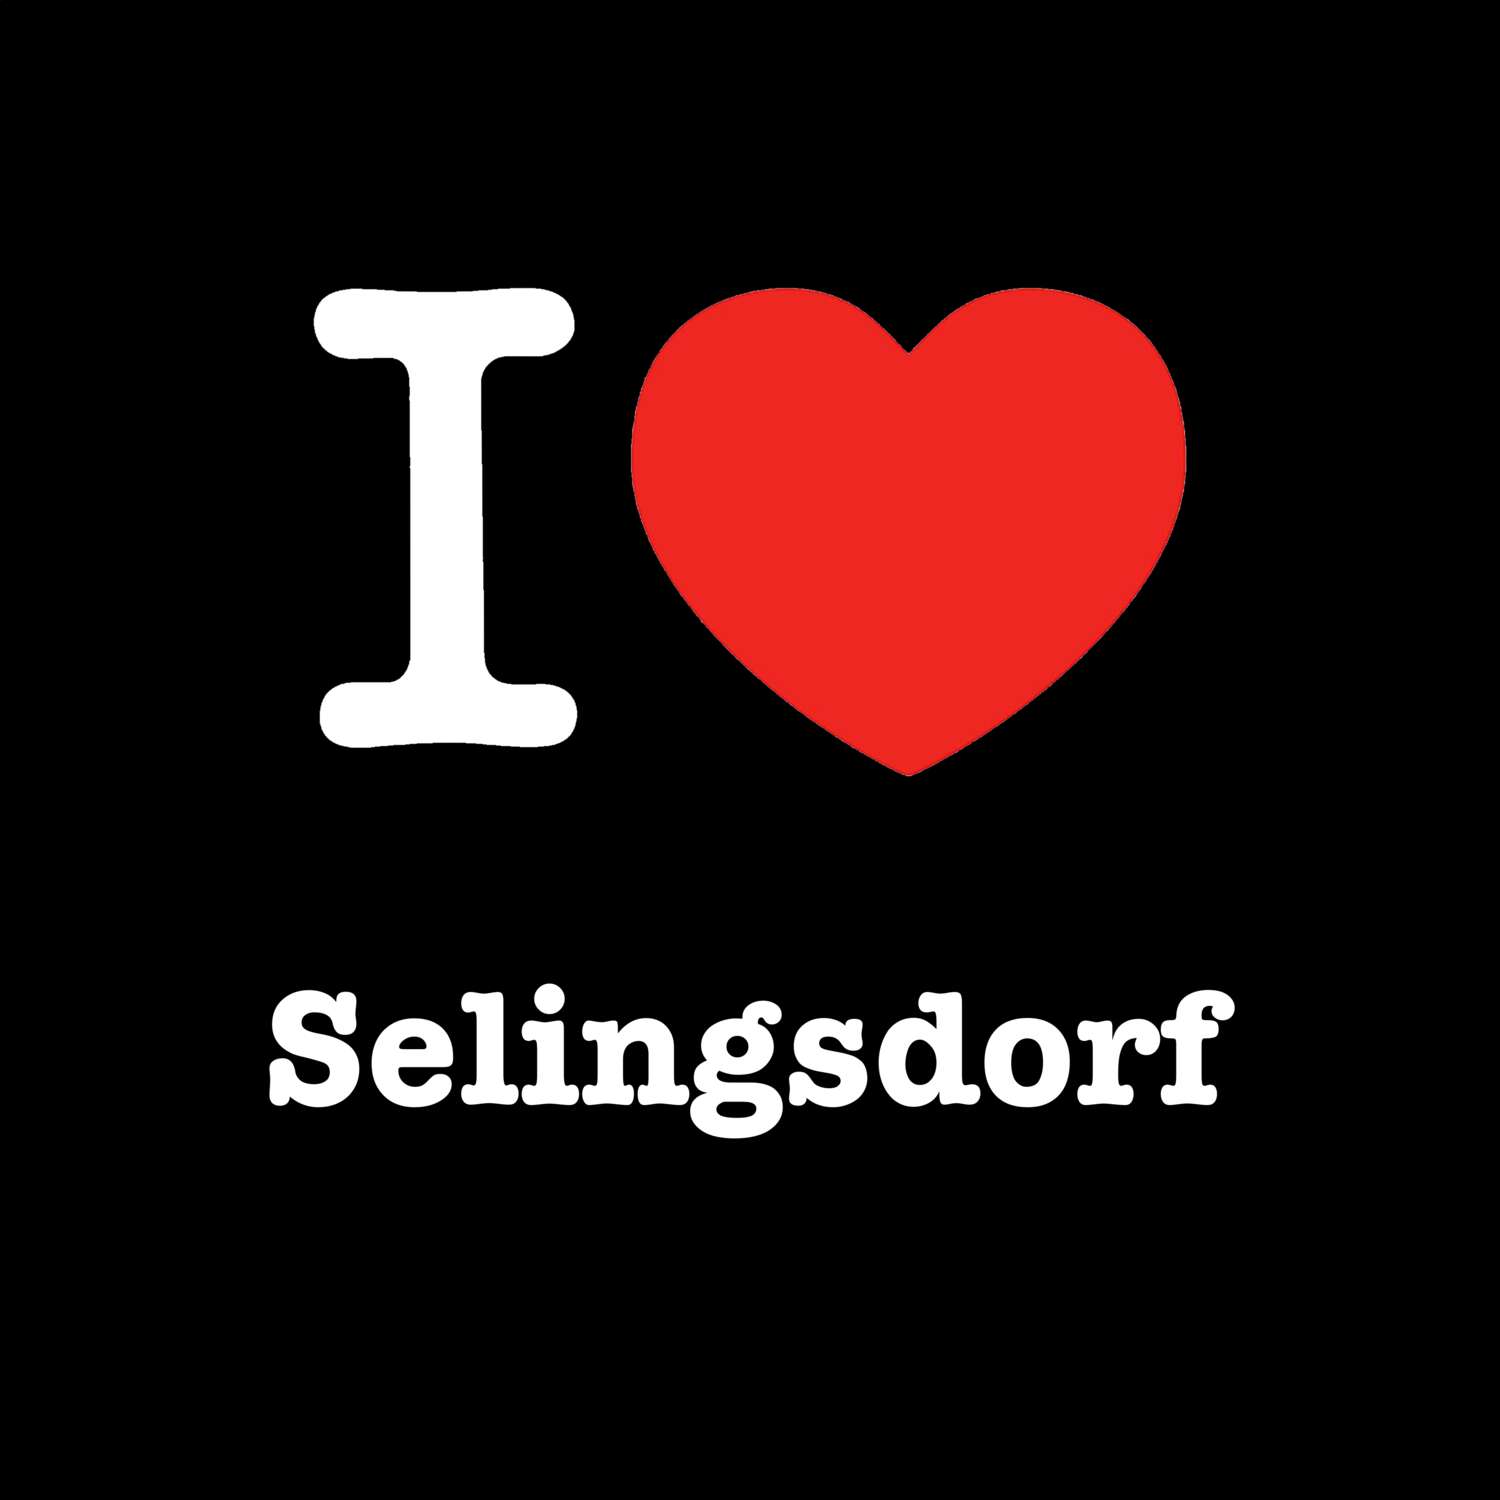 Selingsdorf T-Shirt »I love«